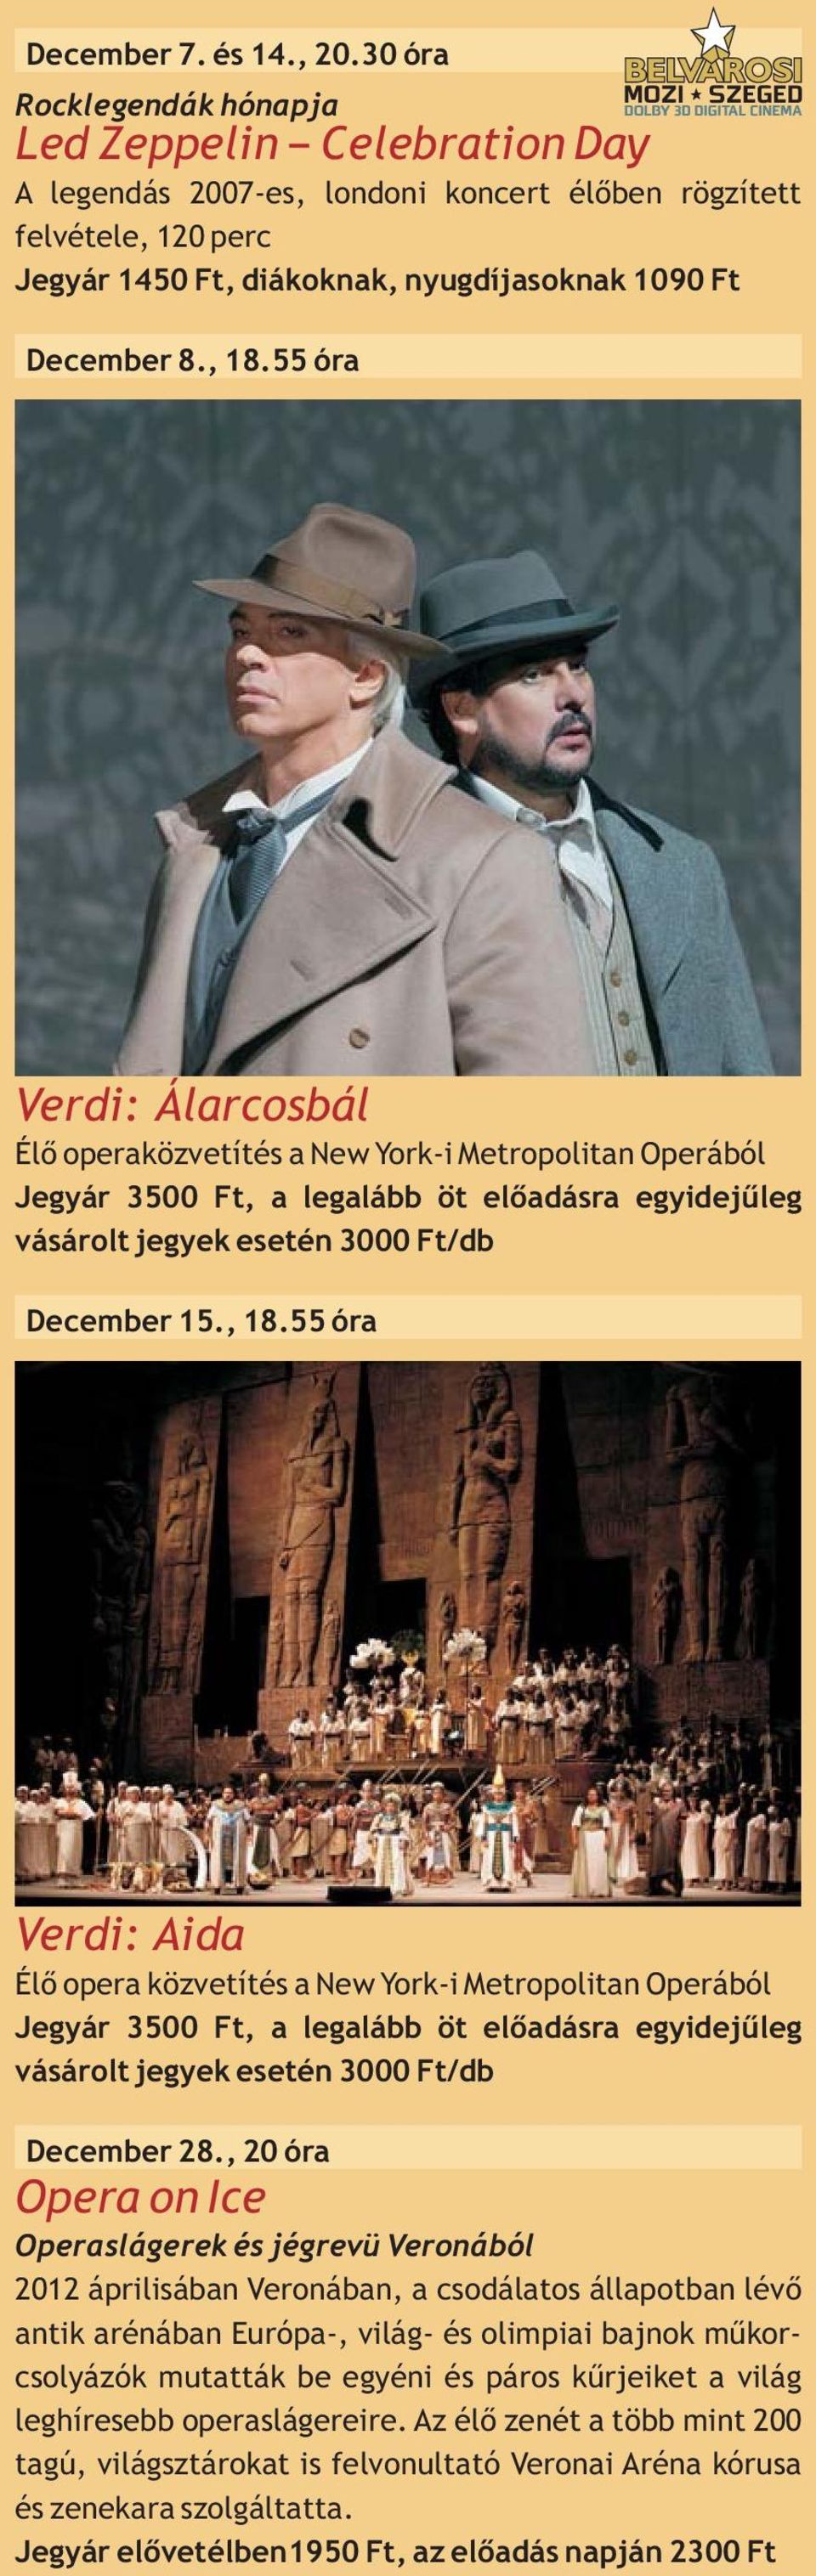 55 óra Verdi: Álarcosbál Élő operaközvetítés a New York-i Metropolitan Operából Jegyár 3500 Ft, a legalább öt előadásra egyidejűleg vásárolt jegyek esetén 3000 Ft/db December 15., 18.